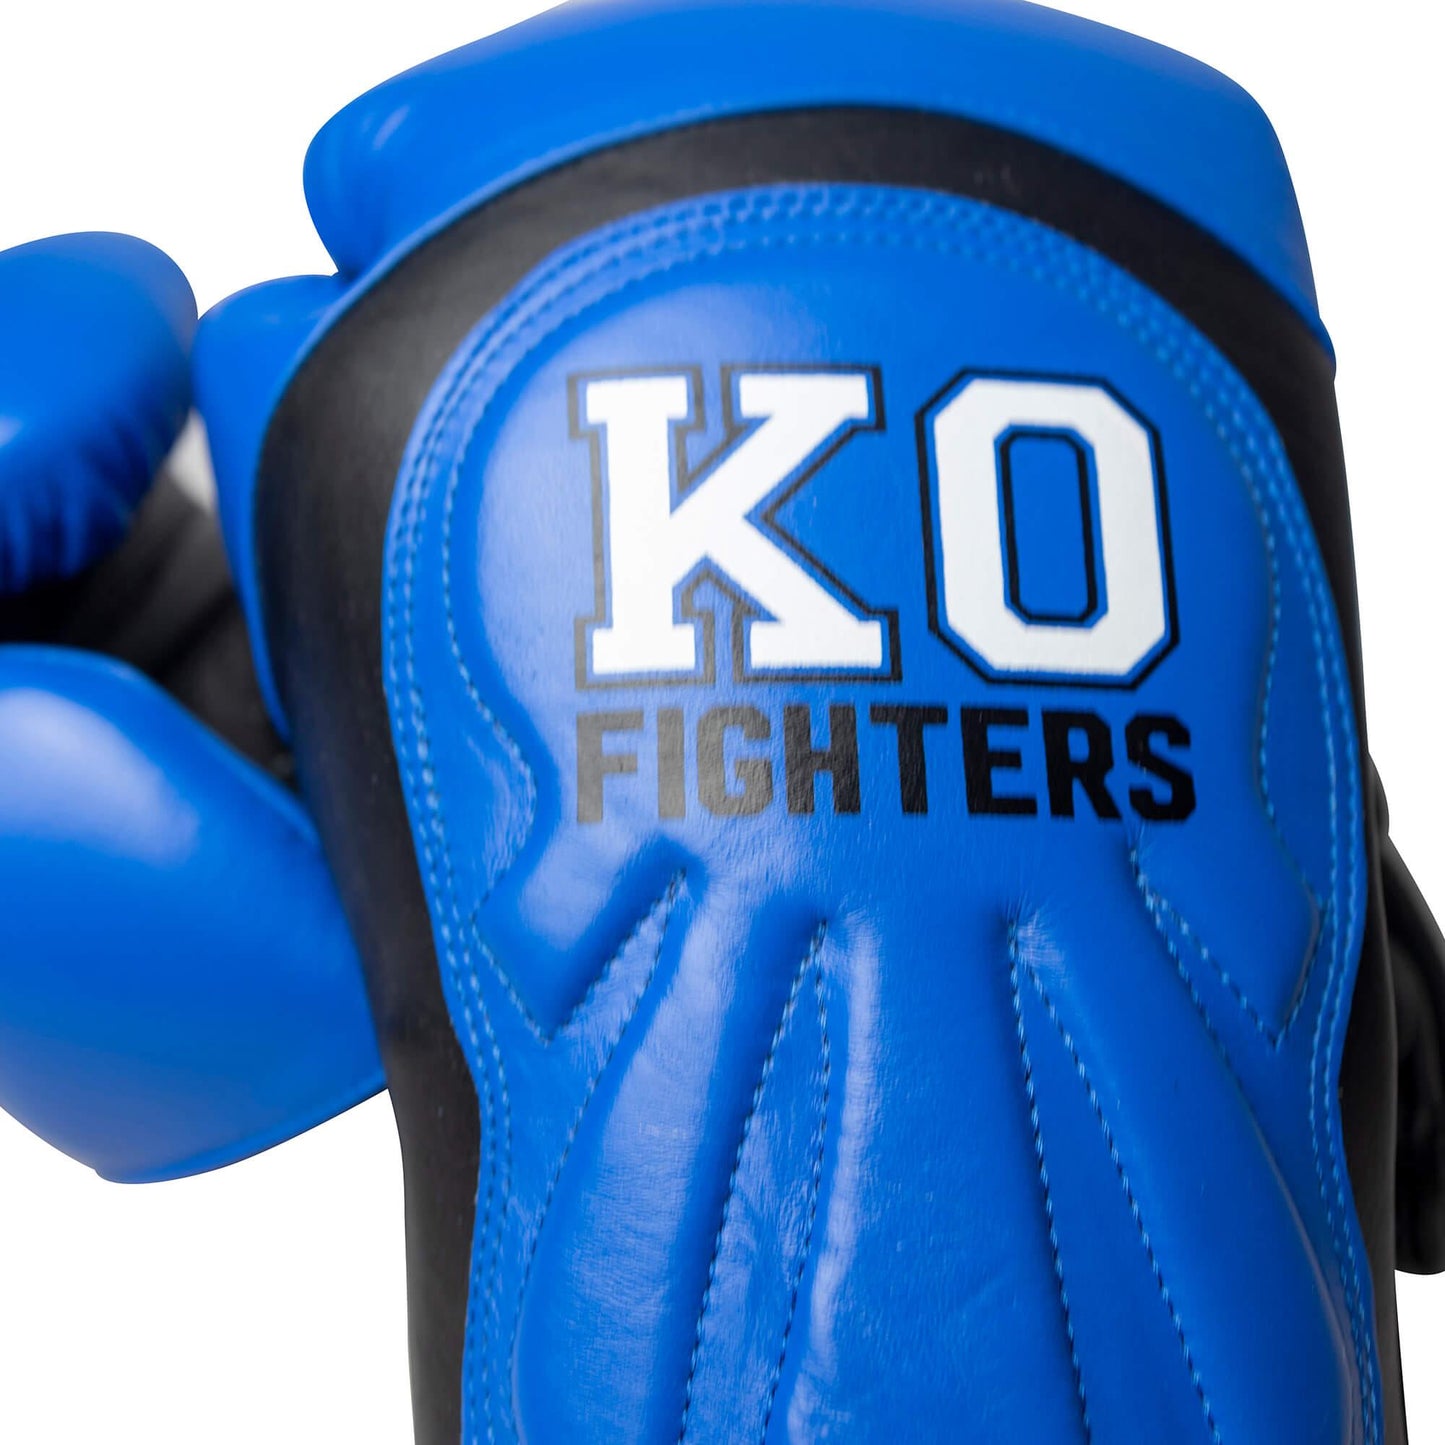 Punch Machine Blauw - kofighters